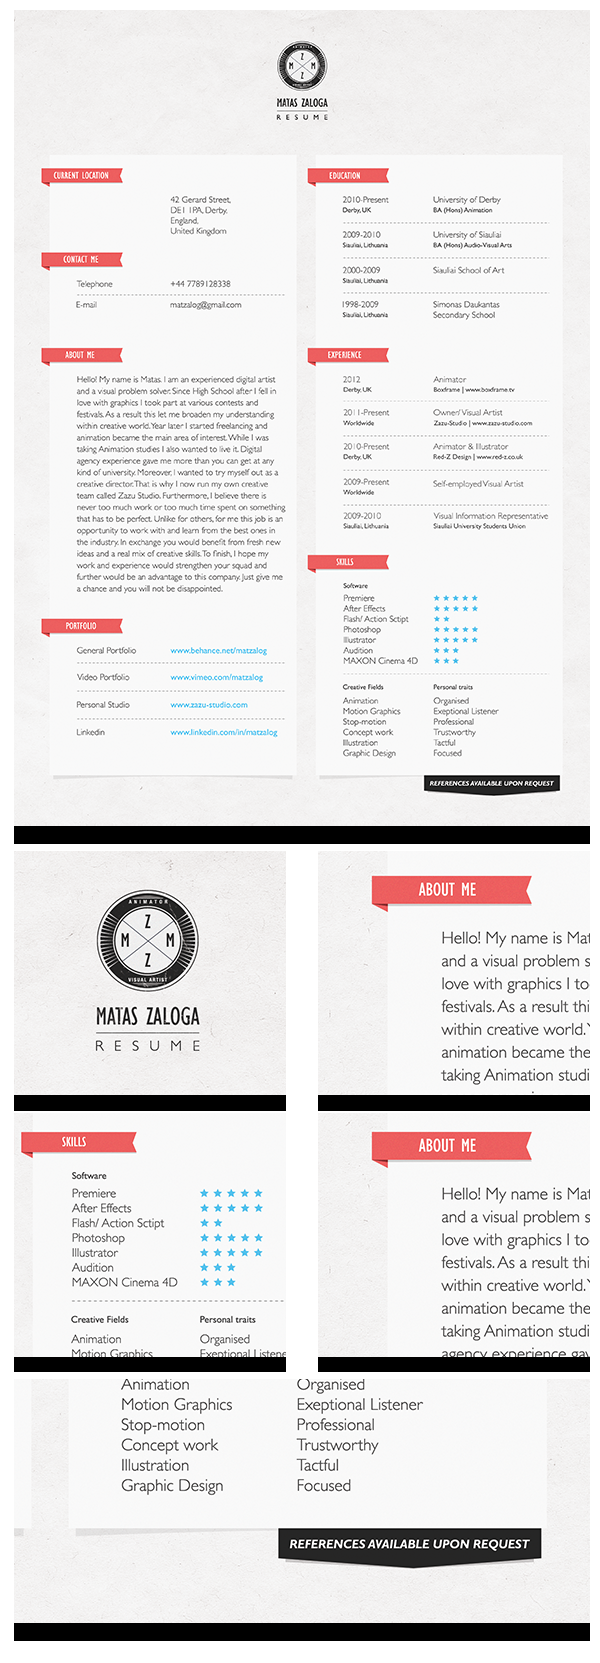 Resume 2012 by Matas Zaloga, via Behance